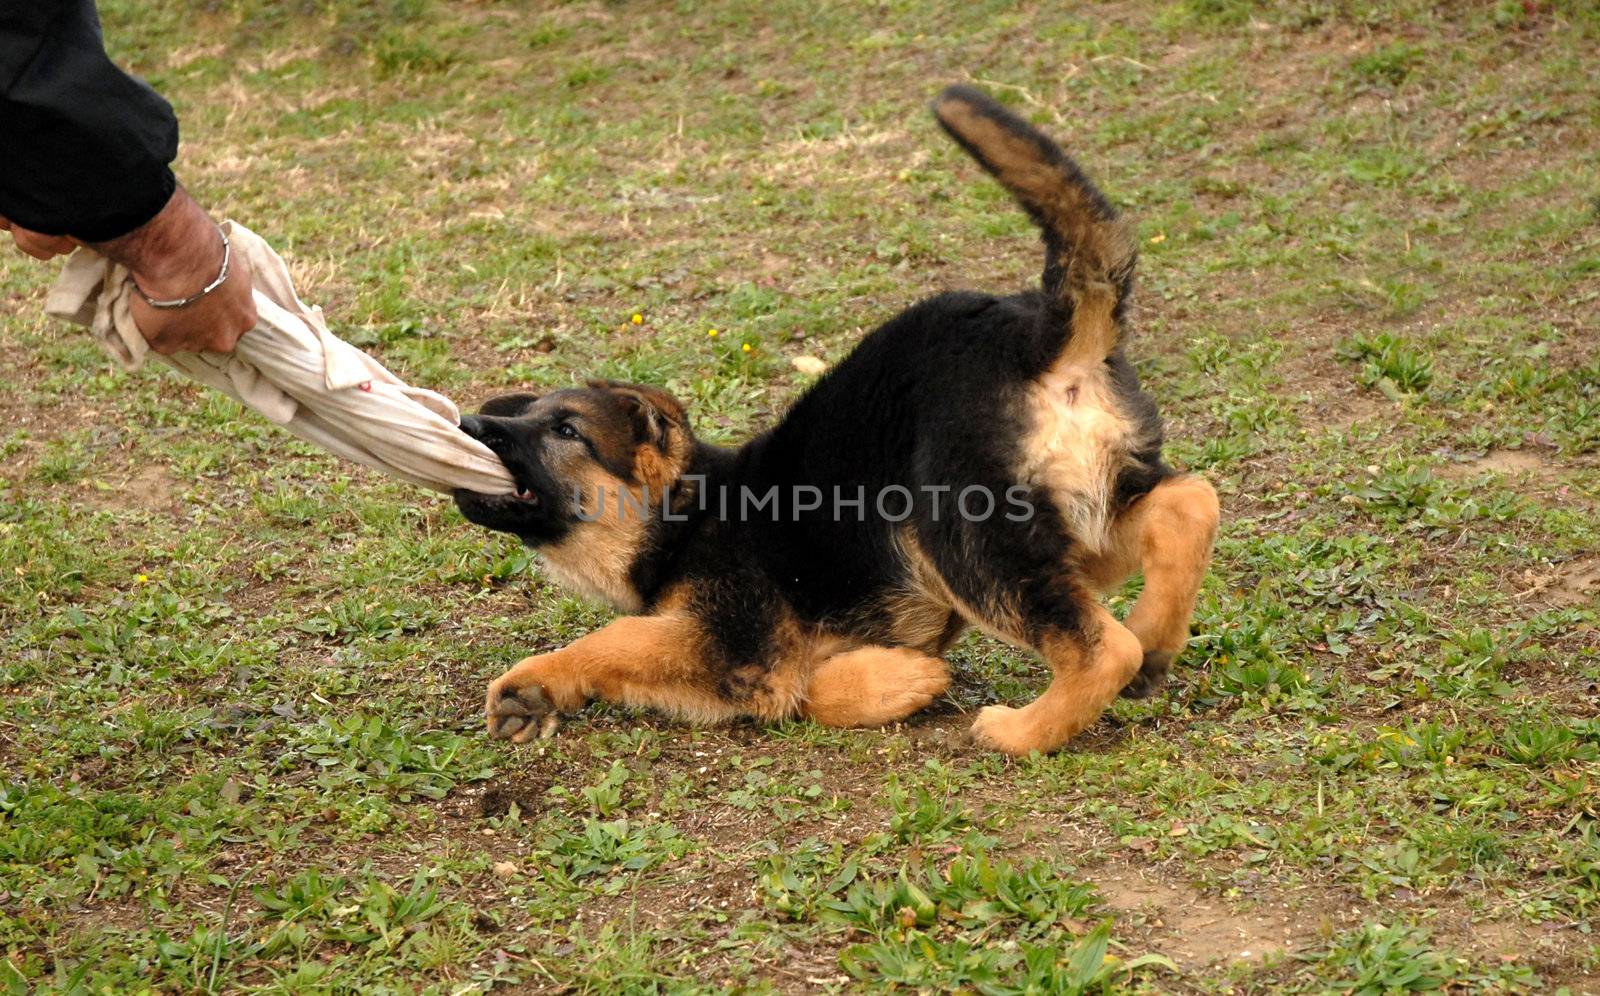 biting puppy by cynoclub